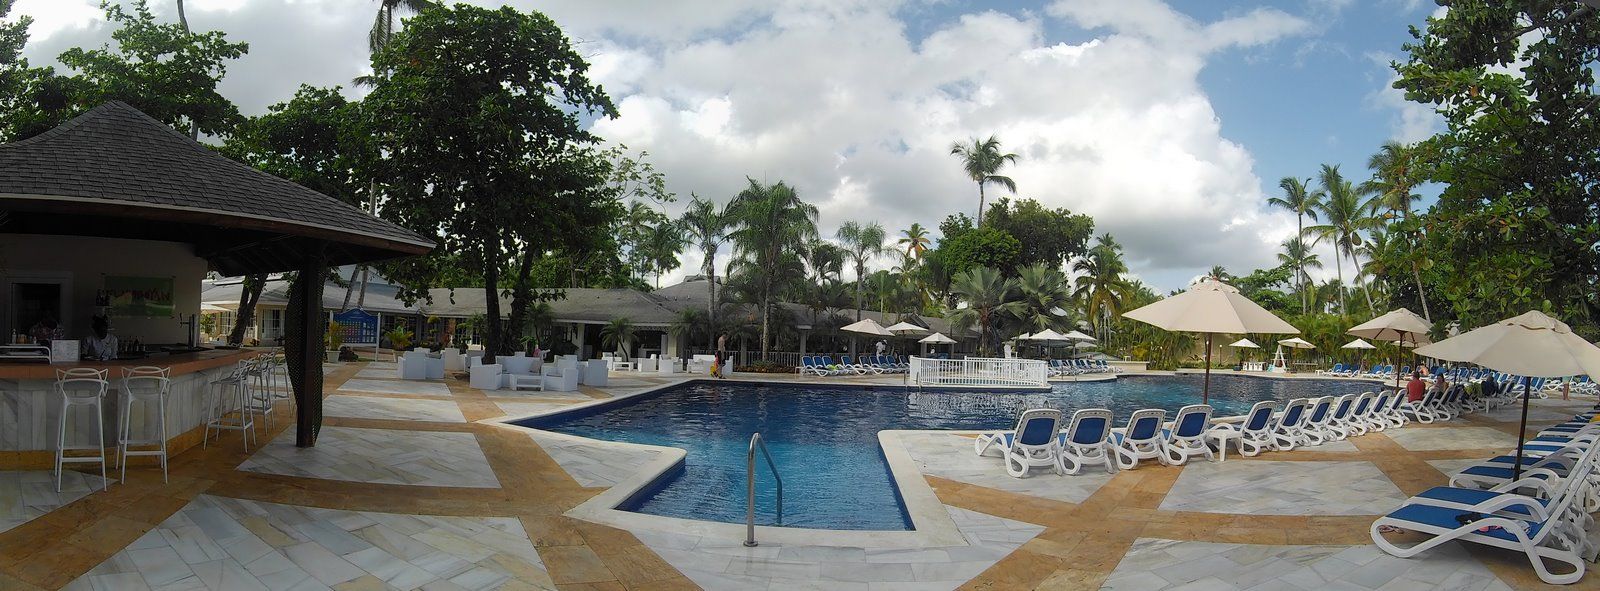 Samana Hotel piscina 003 (Copiar).jpg